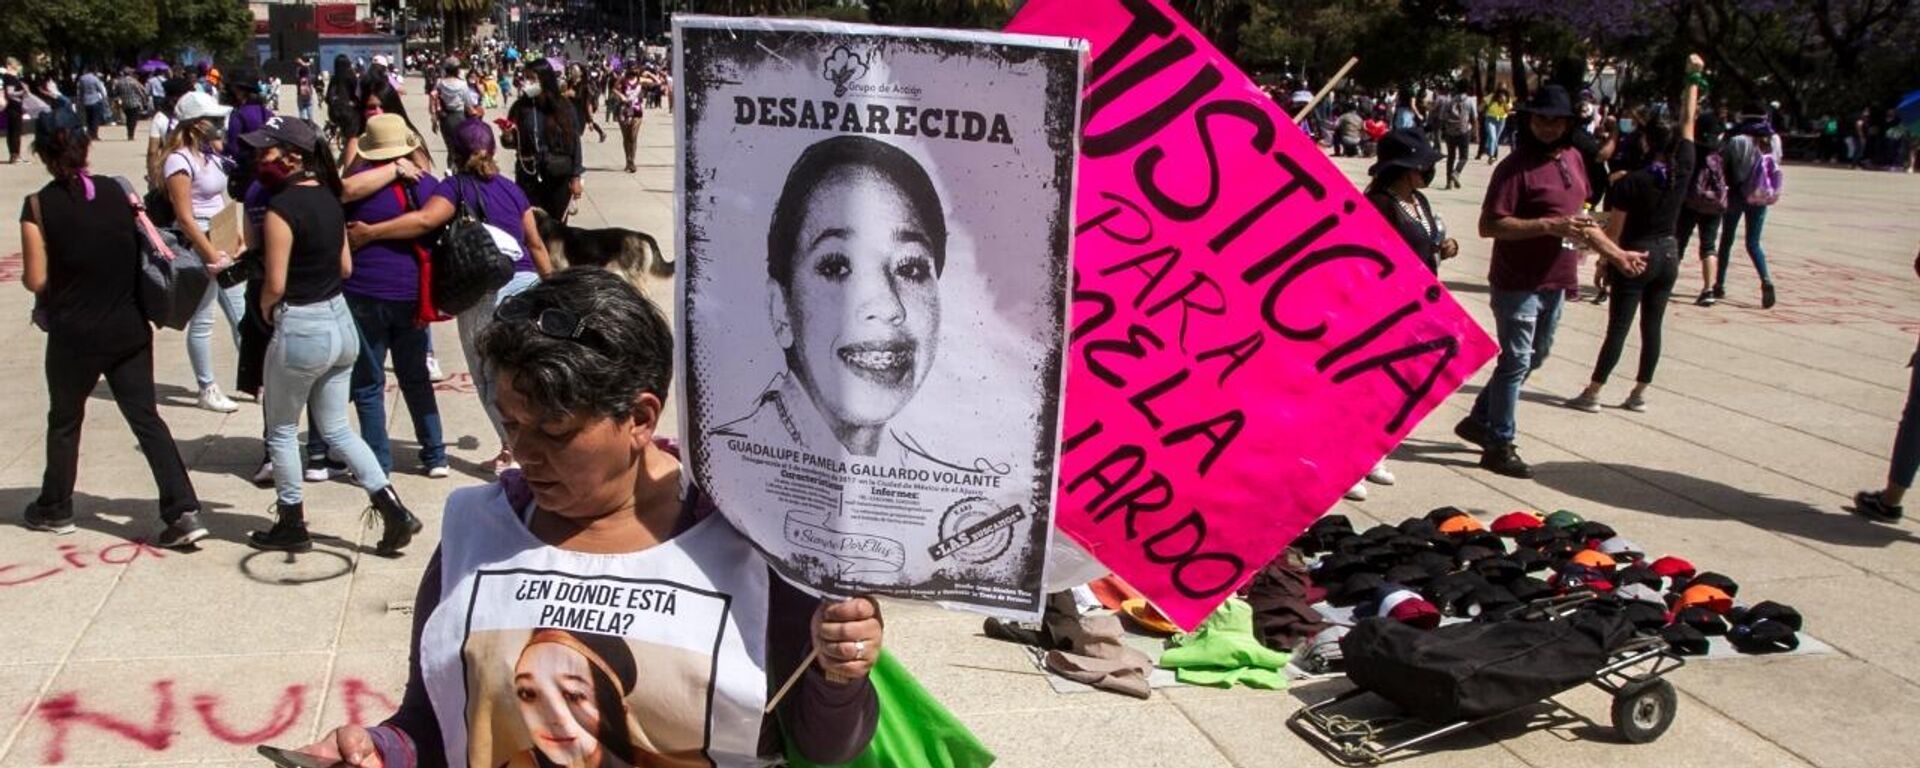 María del Carmen Volante durante la marcha del 8 de marzo del 2021 en la Ciudad de México - Sputnik Mundo, 1920, 09.03.2021